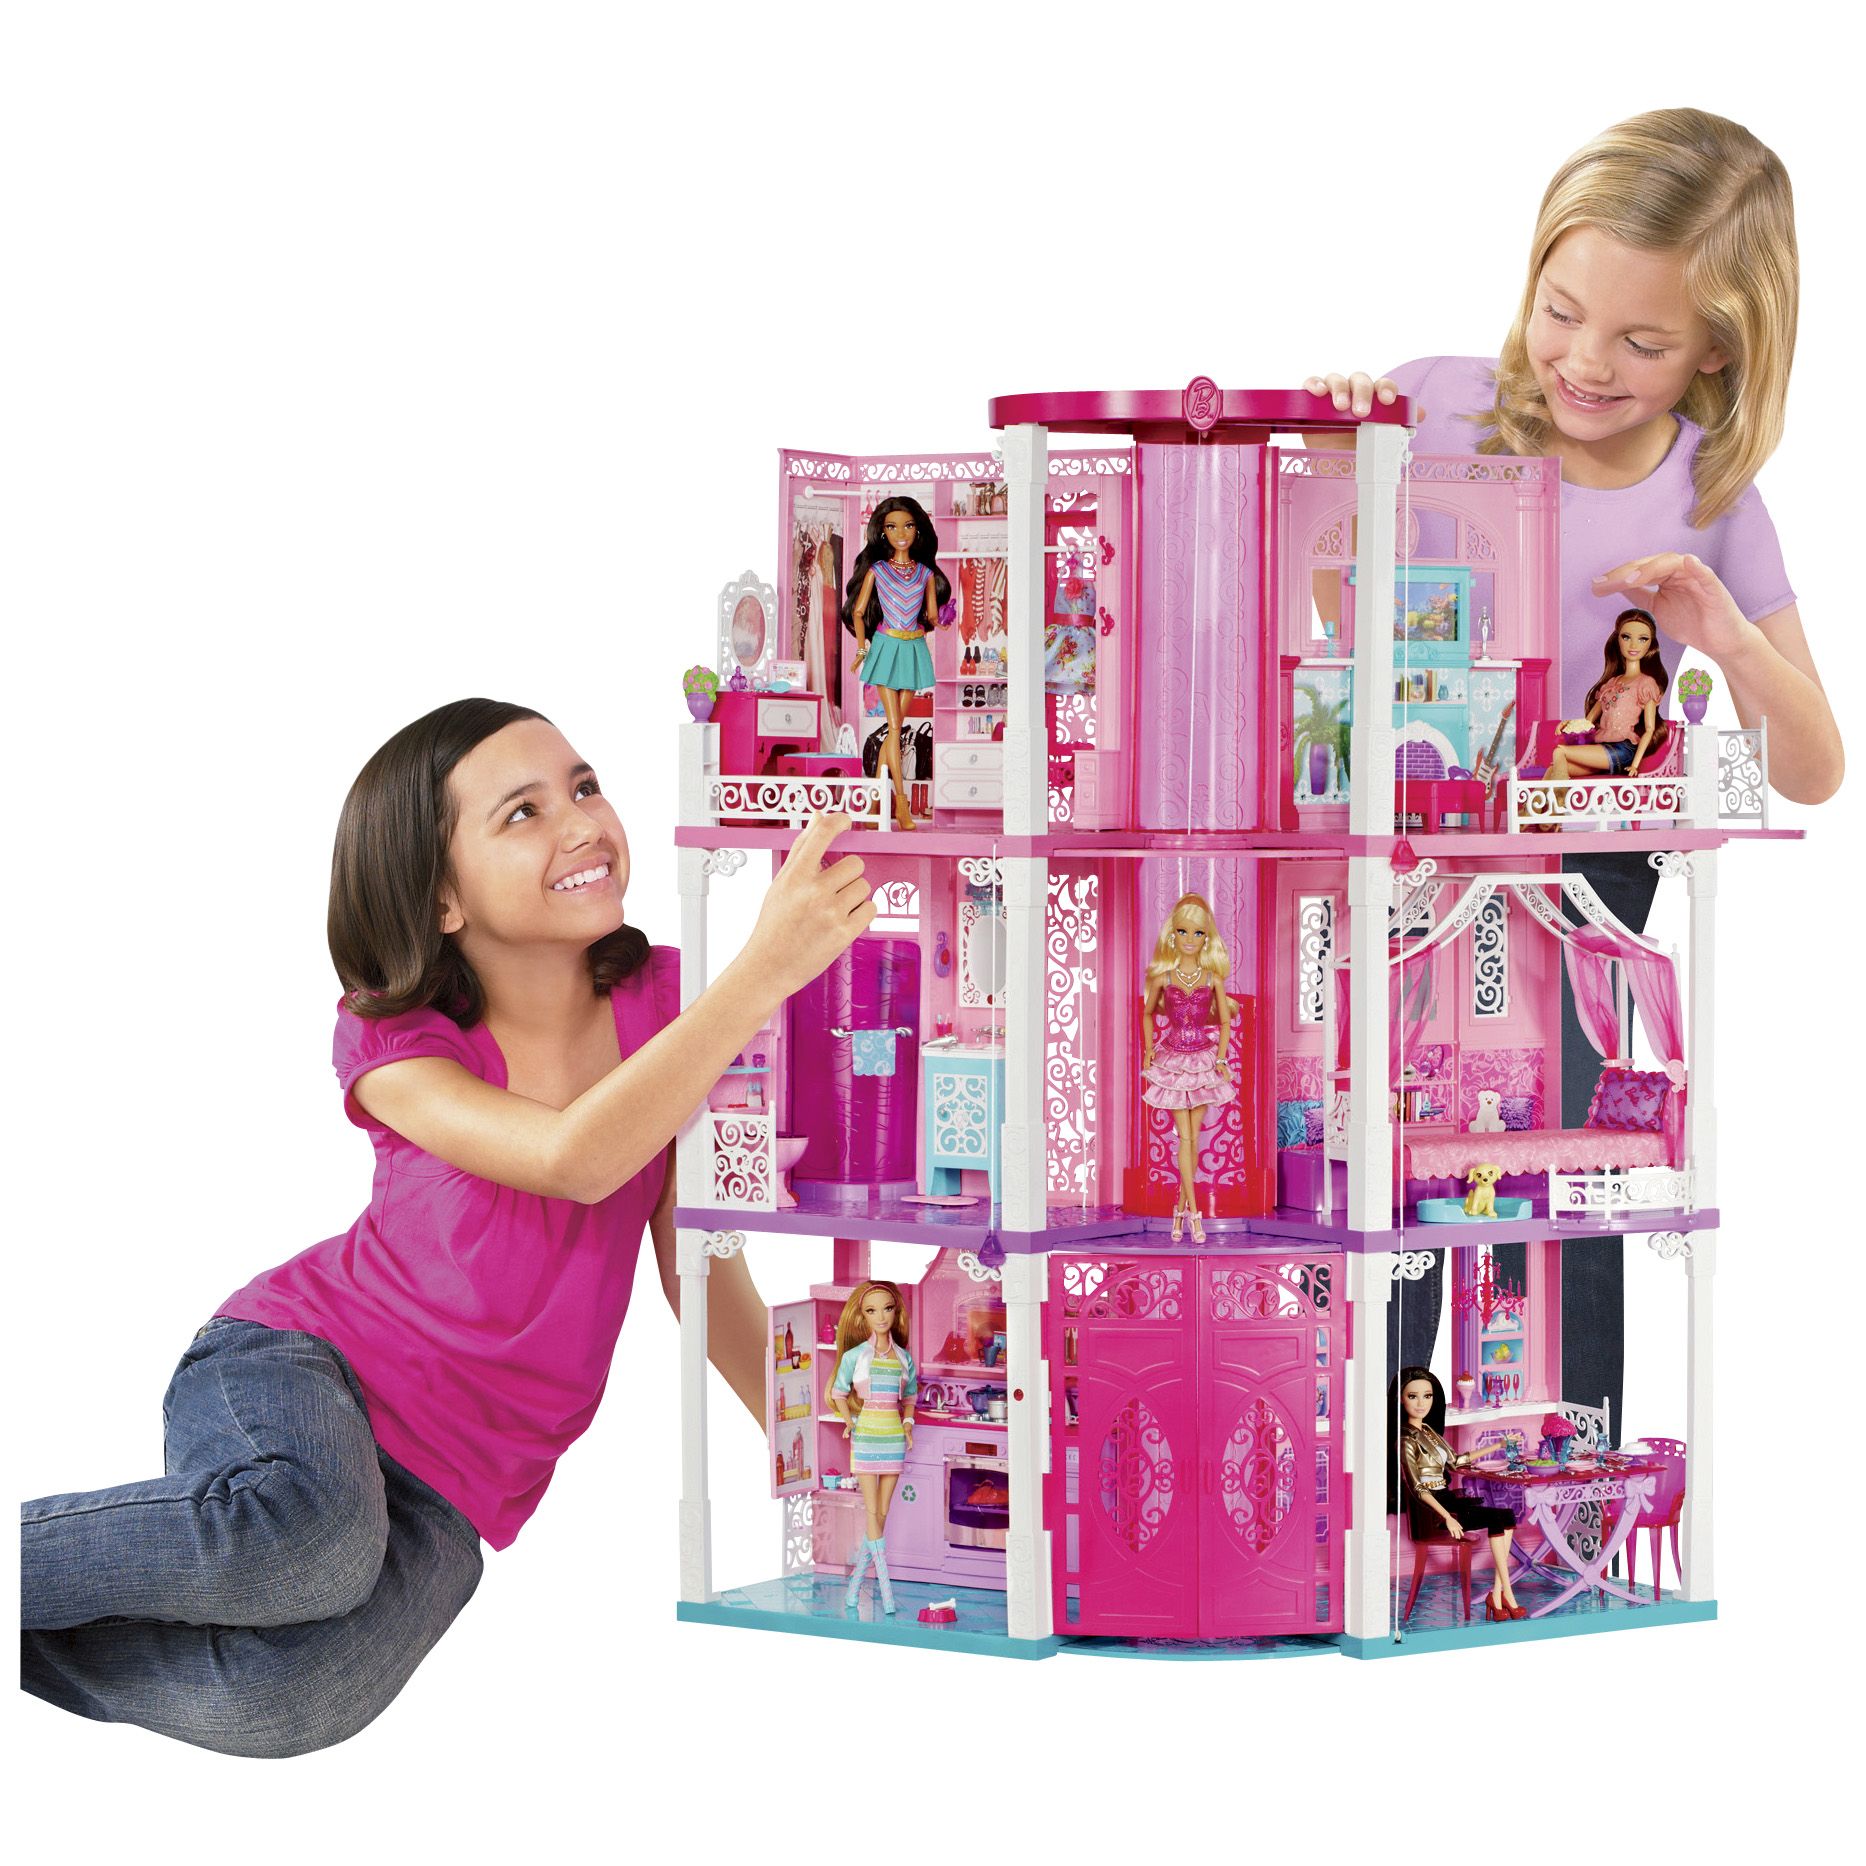 Игрушки для девушек купить. Барби из Дрим Хаус. Домик для кукол Барби Дрим Хаус. Mattel Barbie дом мечты. Игрушки для девочек 8 лет.